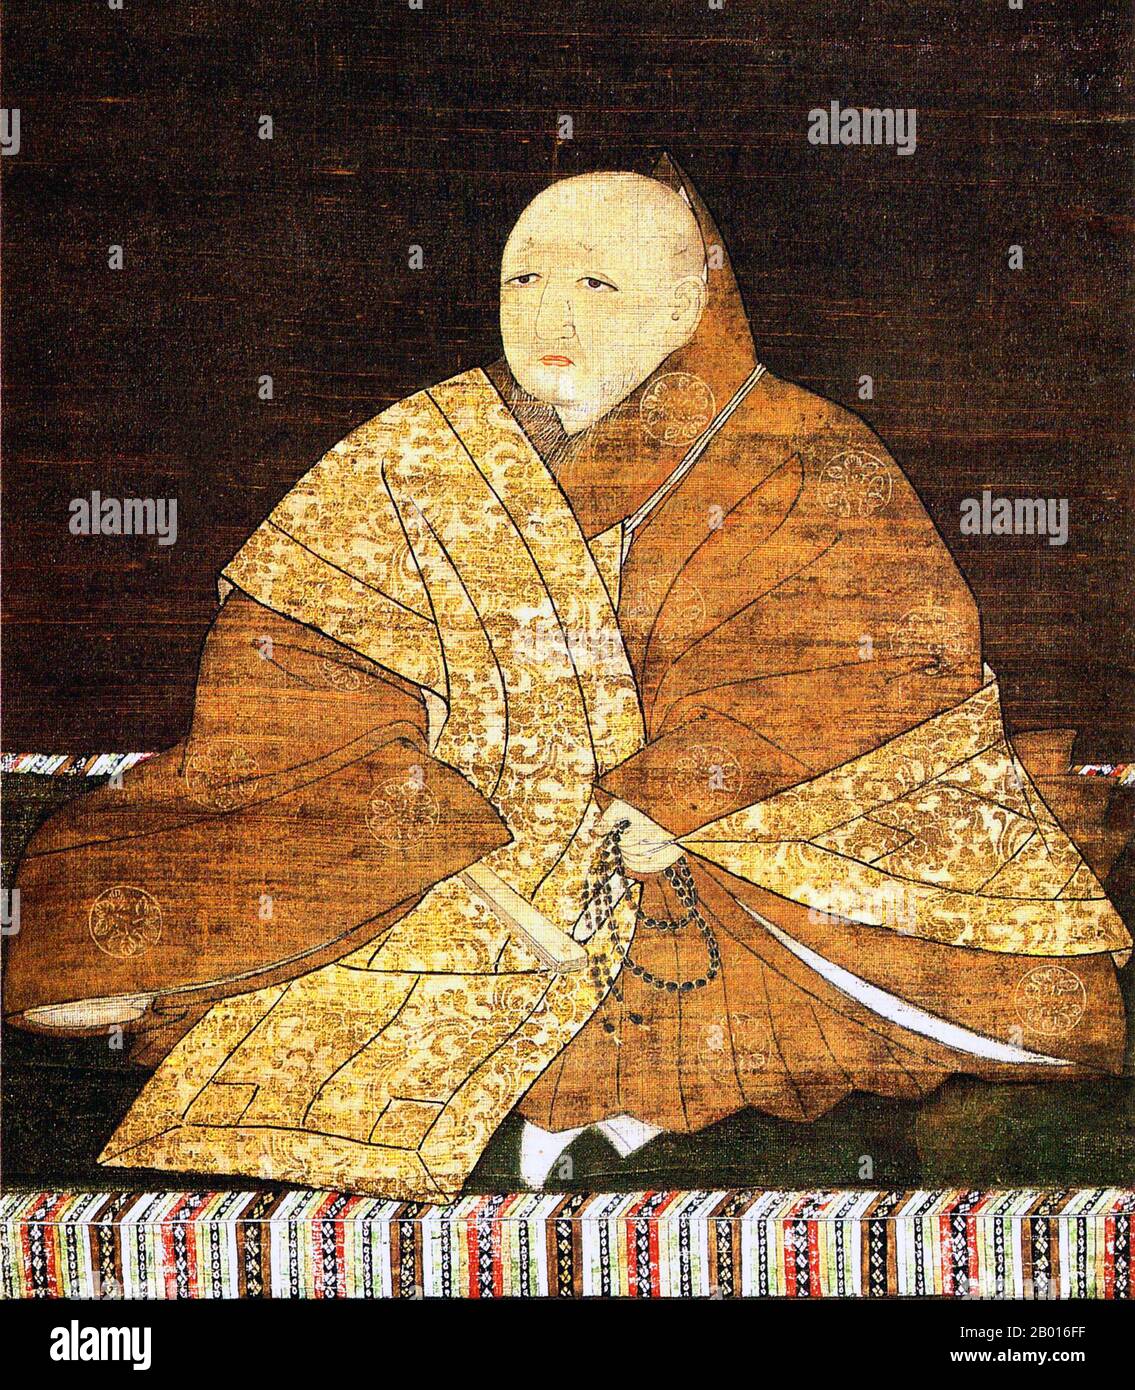 Giappone: Yoshimitsu Ashikaga (25 settembre 1358 - 31 maggio 1408), 3° regnante dell'Ashikaga Shogunate (r. 1368-1394). Rotolo appeso dipinto, 15 ° secolo. Ashikaga Yoshimitsu, nato Haruo, era il terzo shogun dello shogunato di Ashikaga, e il terzo figlio del secondo shogun Ashikaga Yoshiakira. Divenne shogun all'età di dieci anni. Fu la prima persona della classe samurai ad ospitare un imperatore regnante nella sua proprietà privata nel 1381. Nel 1392, pose fine allo scisma imperiale di Nanboku-cho che aveva afflitto la politica per oltre mezzo secolo, e si ritirò dall'ufficio pubblico nel 1395 per diventare un monaco. Foto Stock